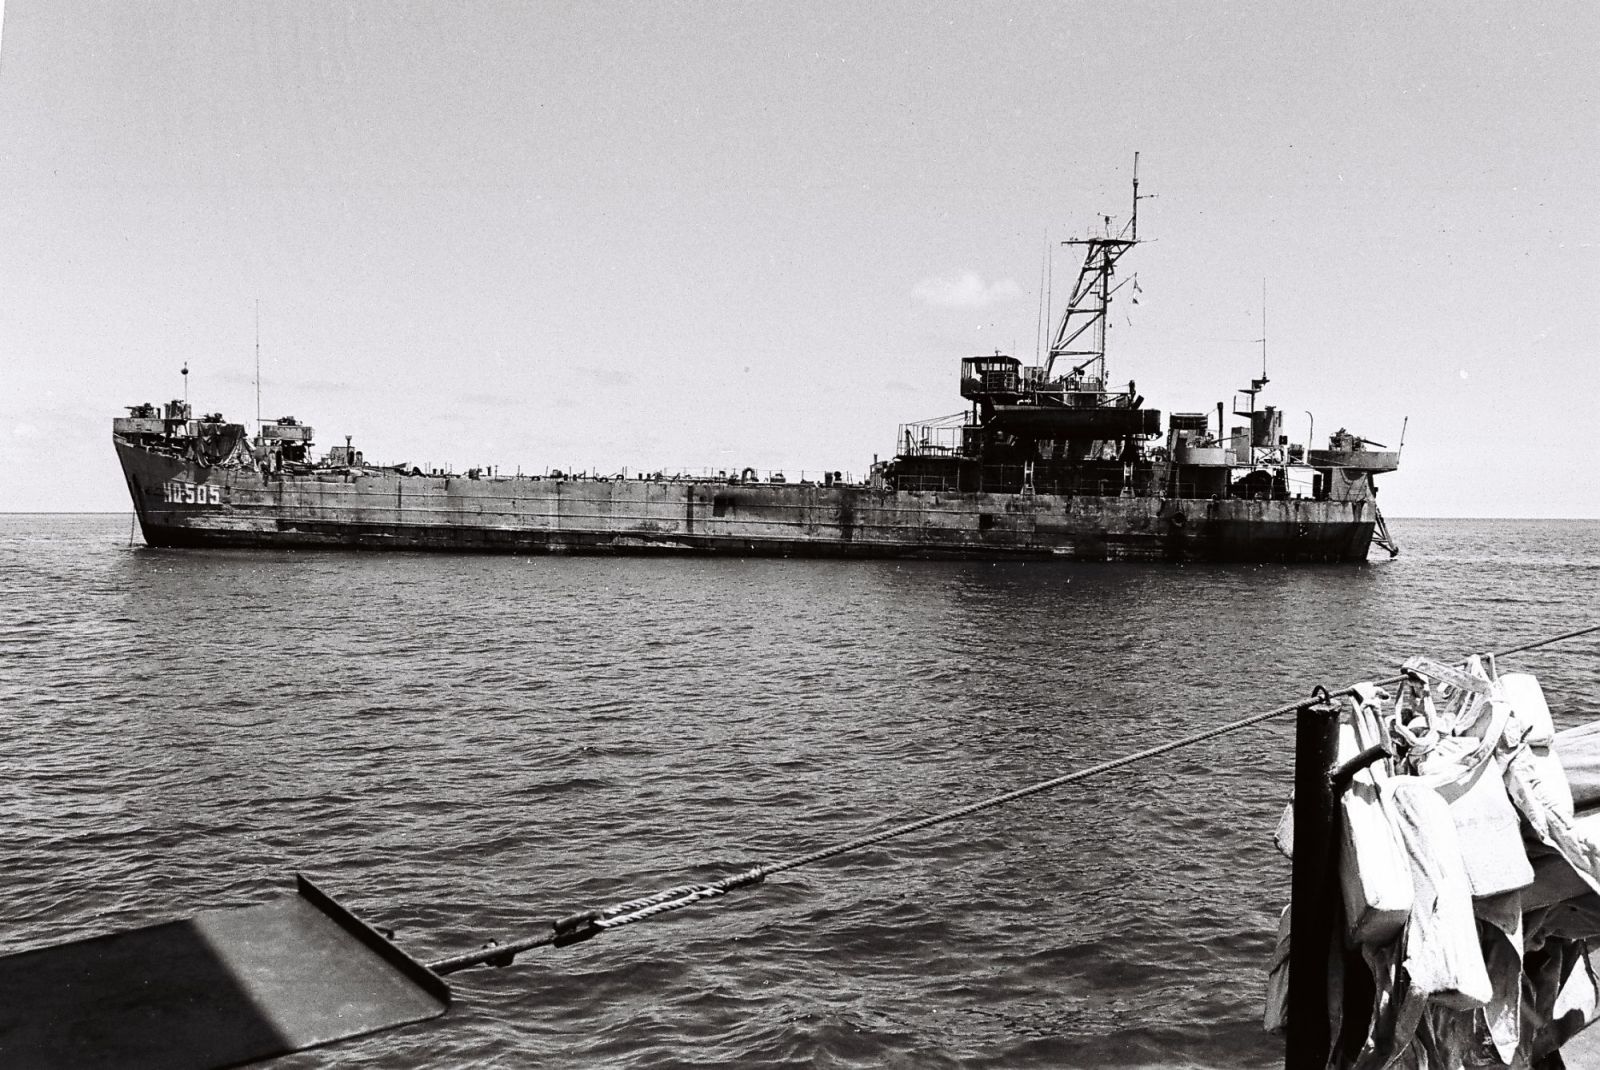 Trường Sa 1988 – trận hải chiến mà cả Mỹ lẫn Liên Xô đều ‘không để ý’